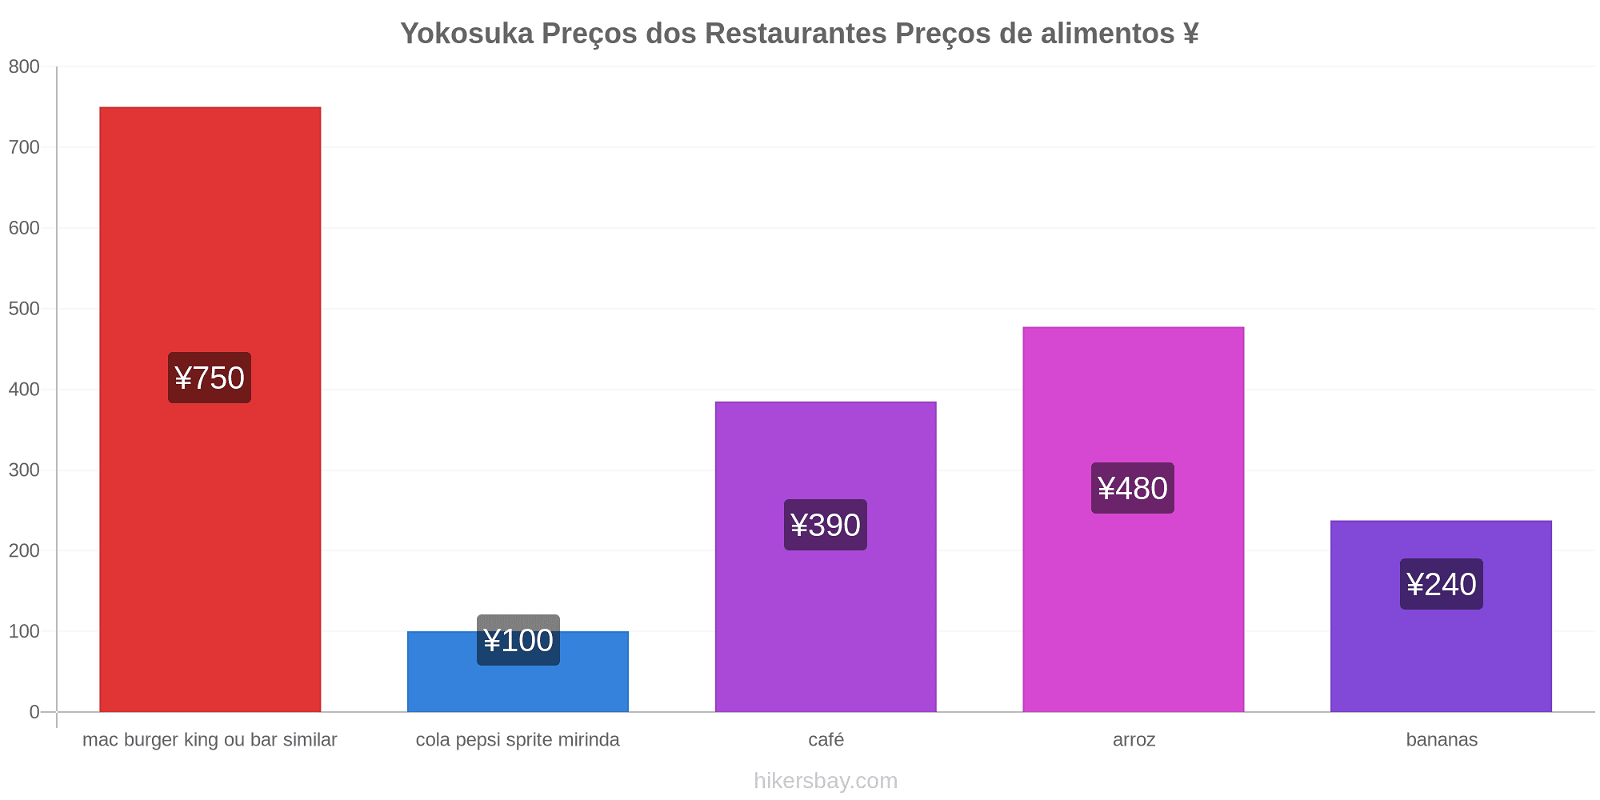 Yokosuka mudanças de preços hikersbay.com